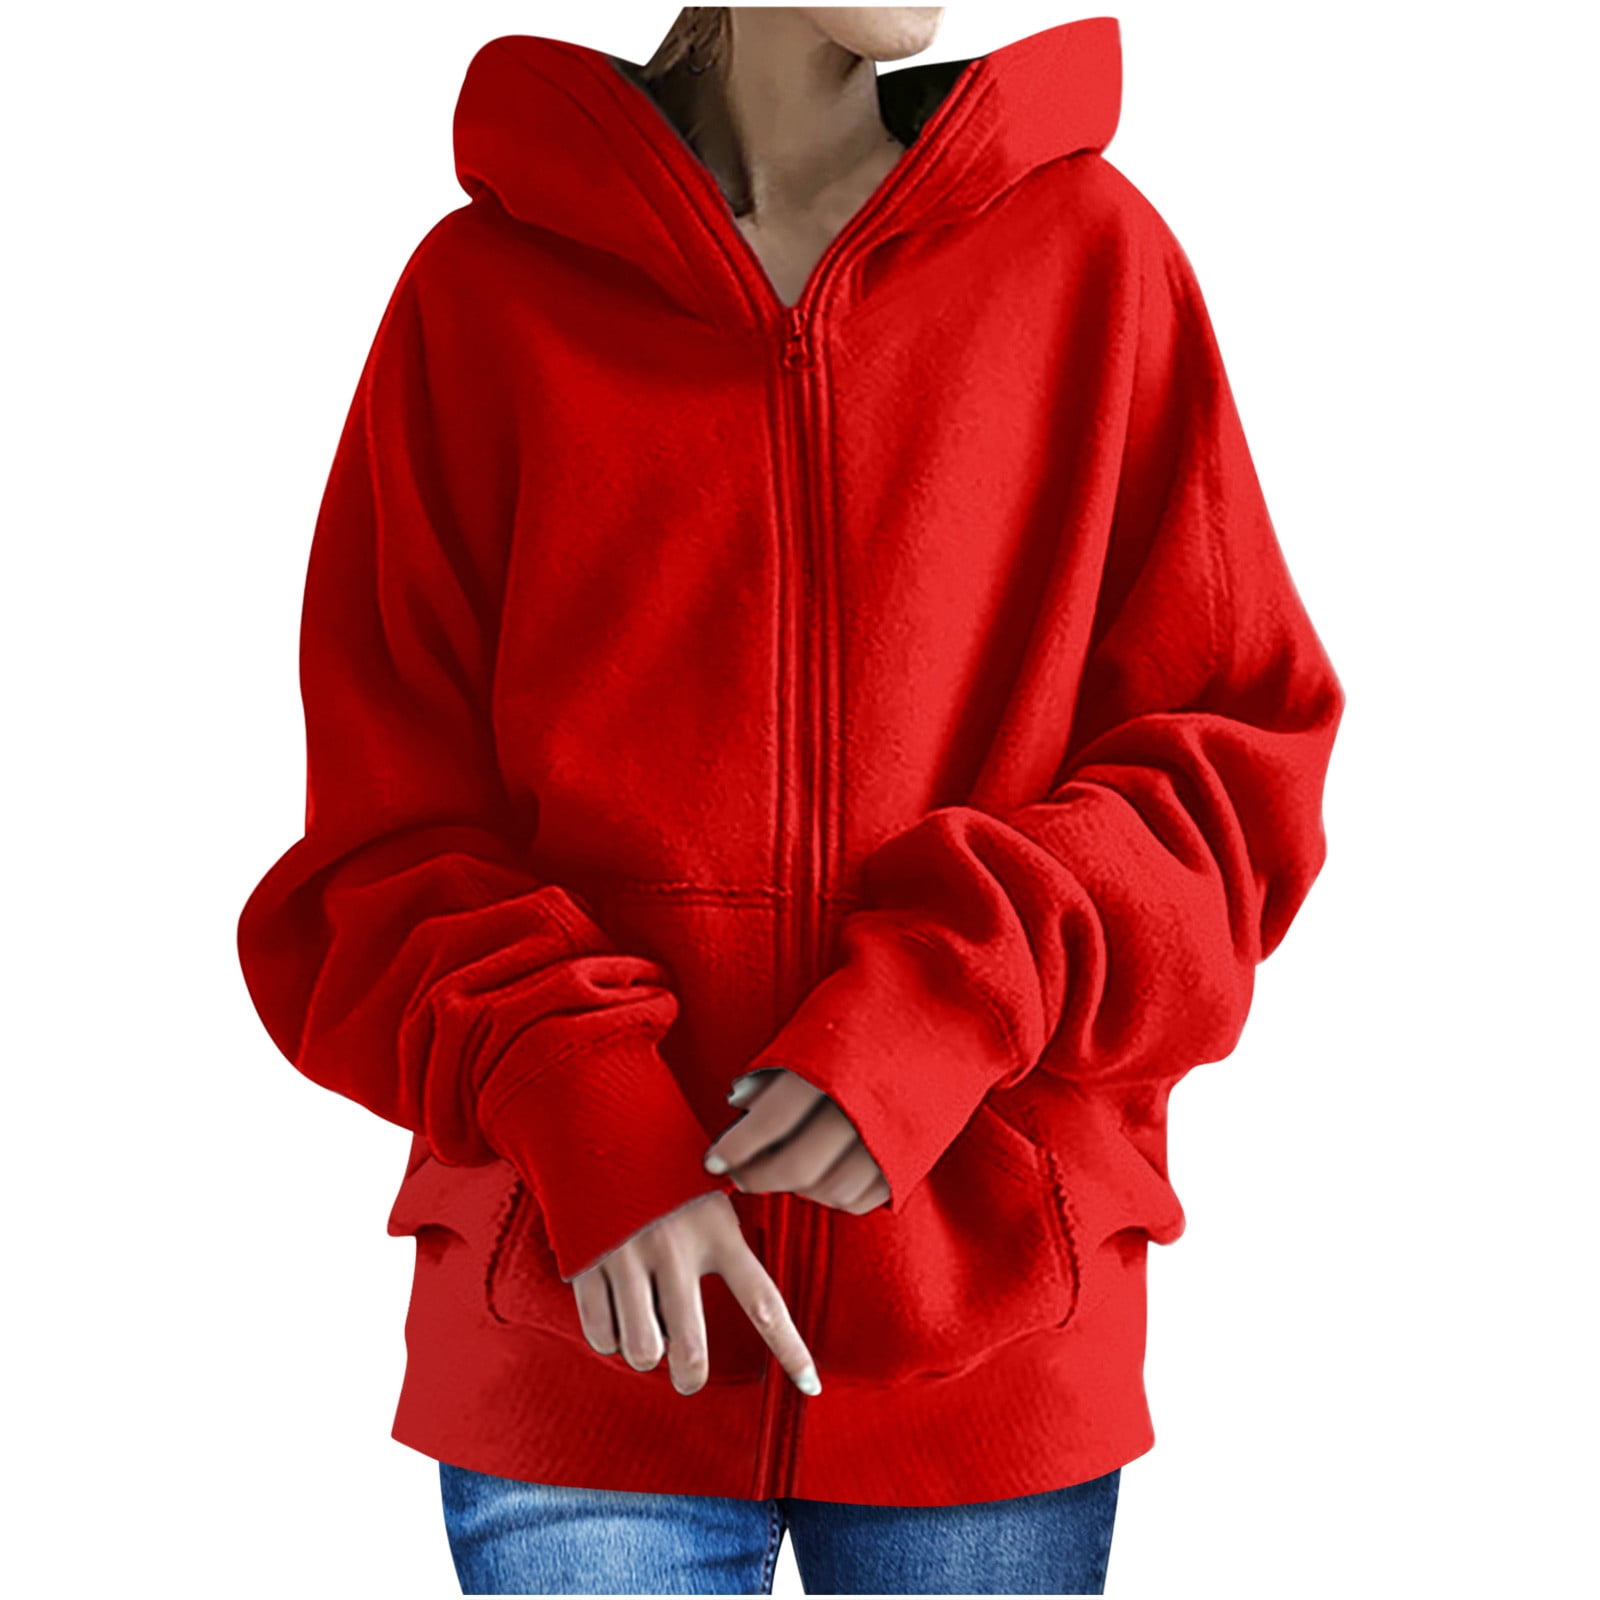 DDAPJ pyju Women's Zip Up Hoodie,Long Sleeve Solid Color Basic Hooded ...